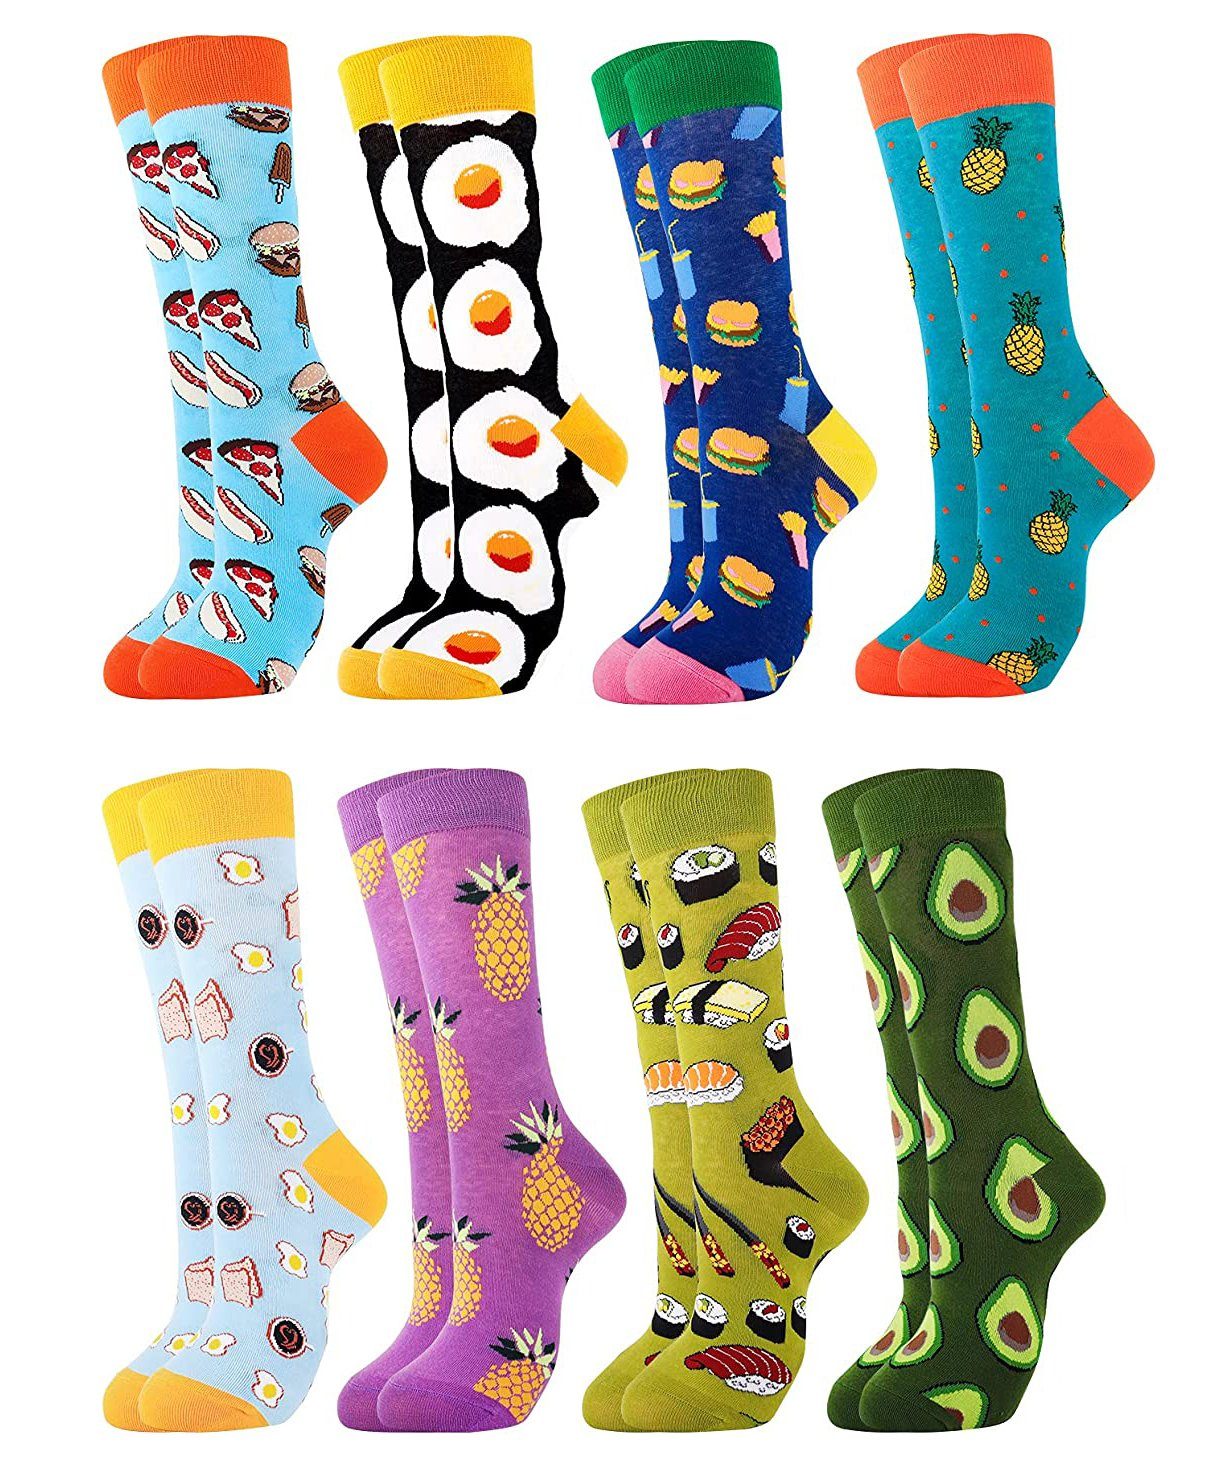 Alster Herz Freizeitsocken Lustige bunte Socken Sneakersocken, Unisex, Geschenk, A0375 (Set, 4-Paar) Baumwolle Motiv Socken, Größe 36-43